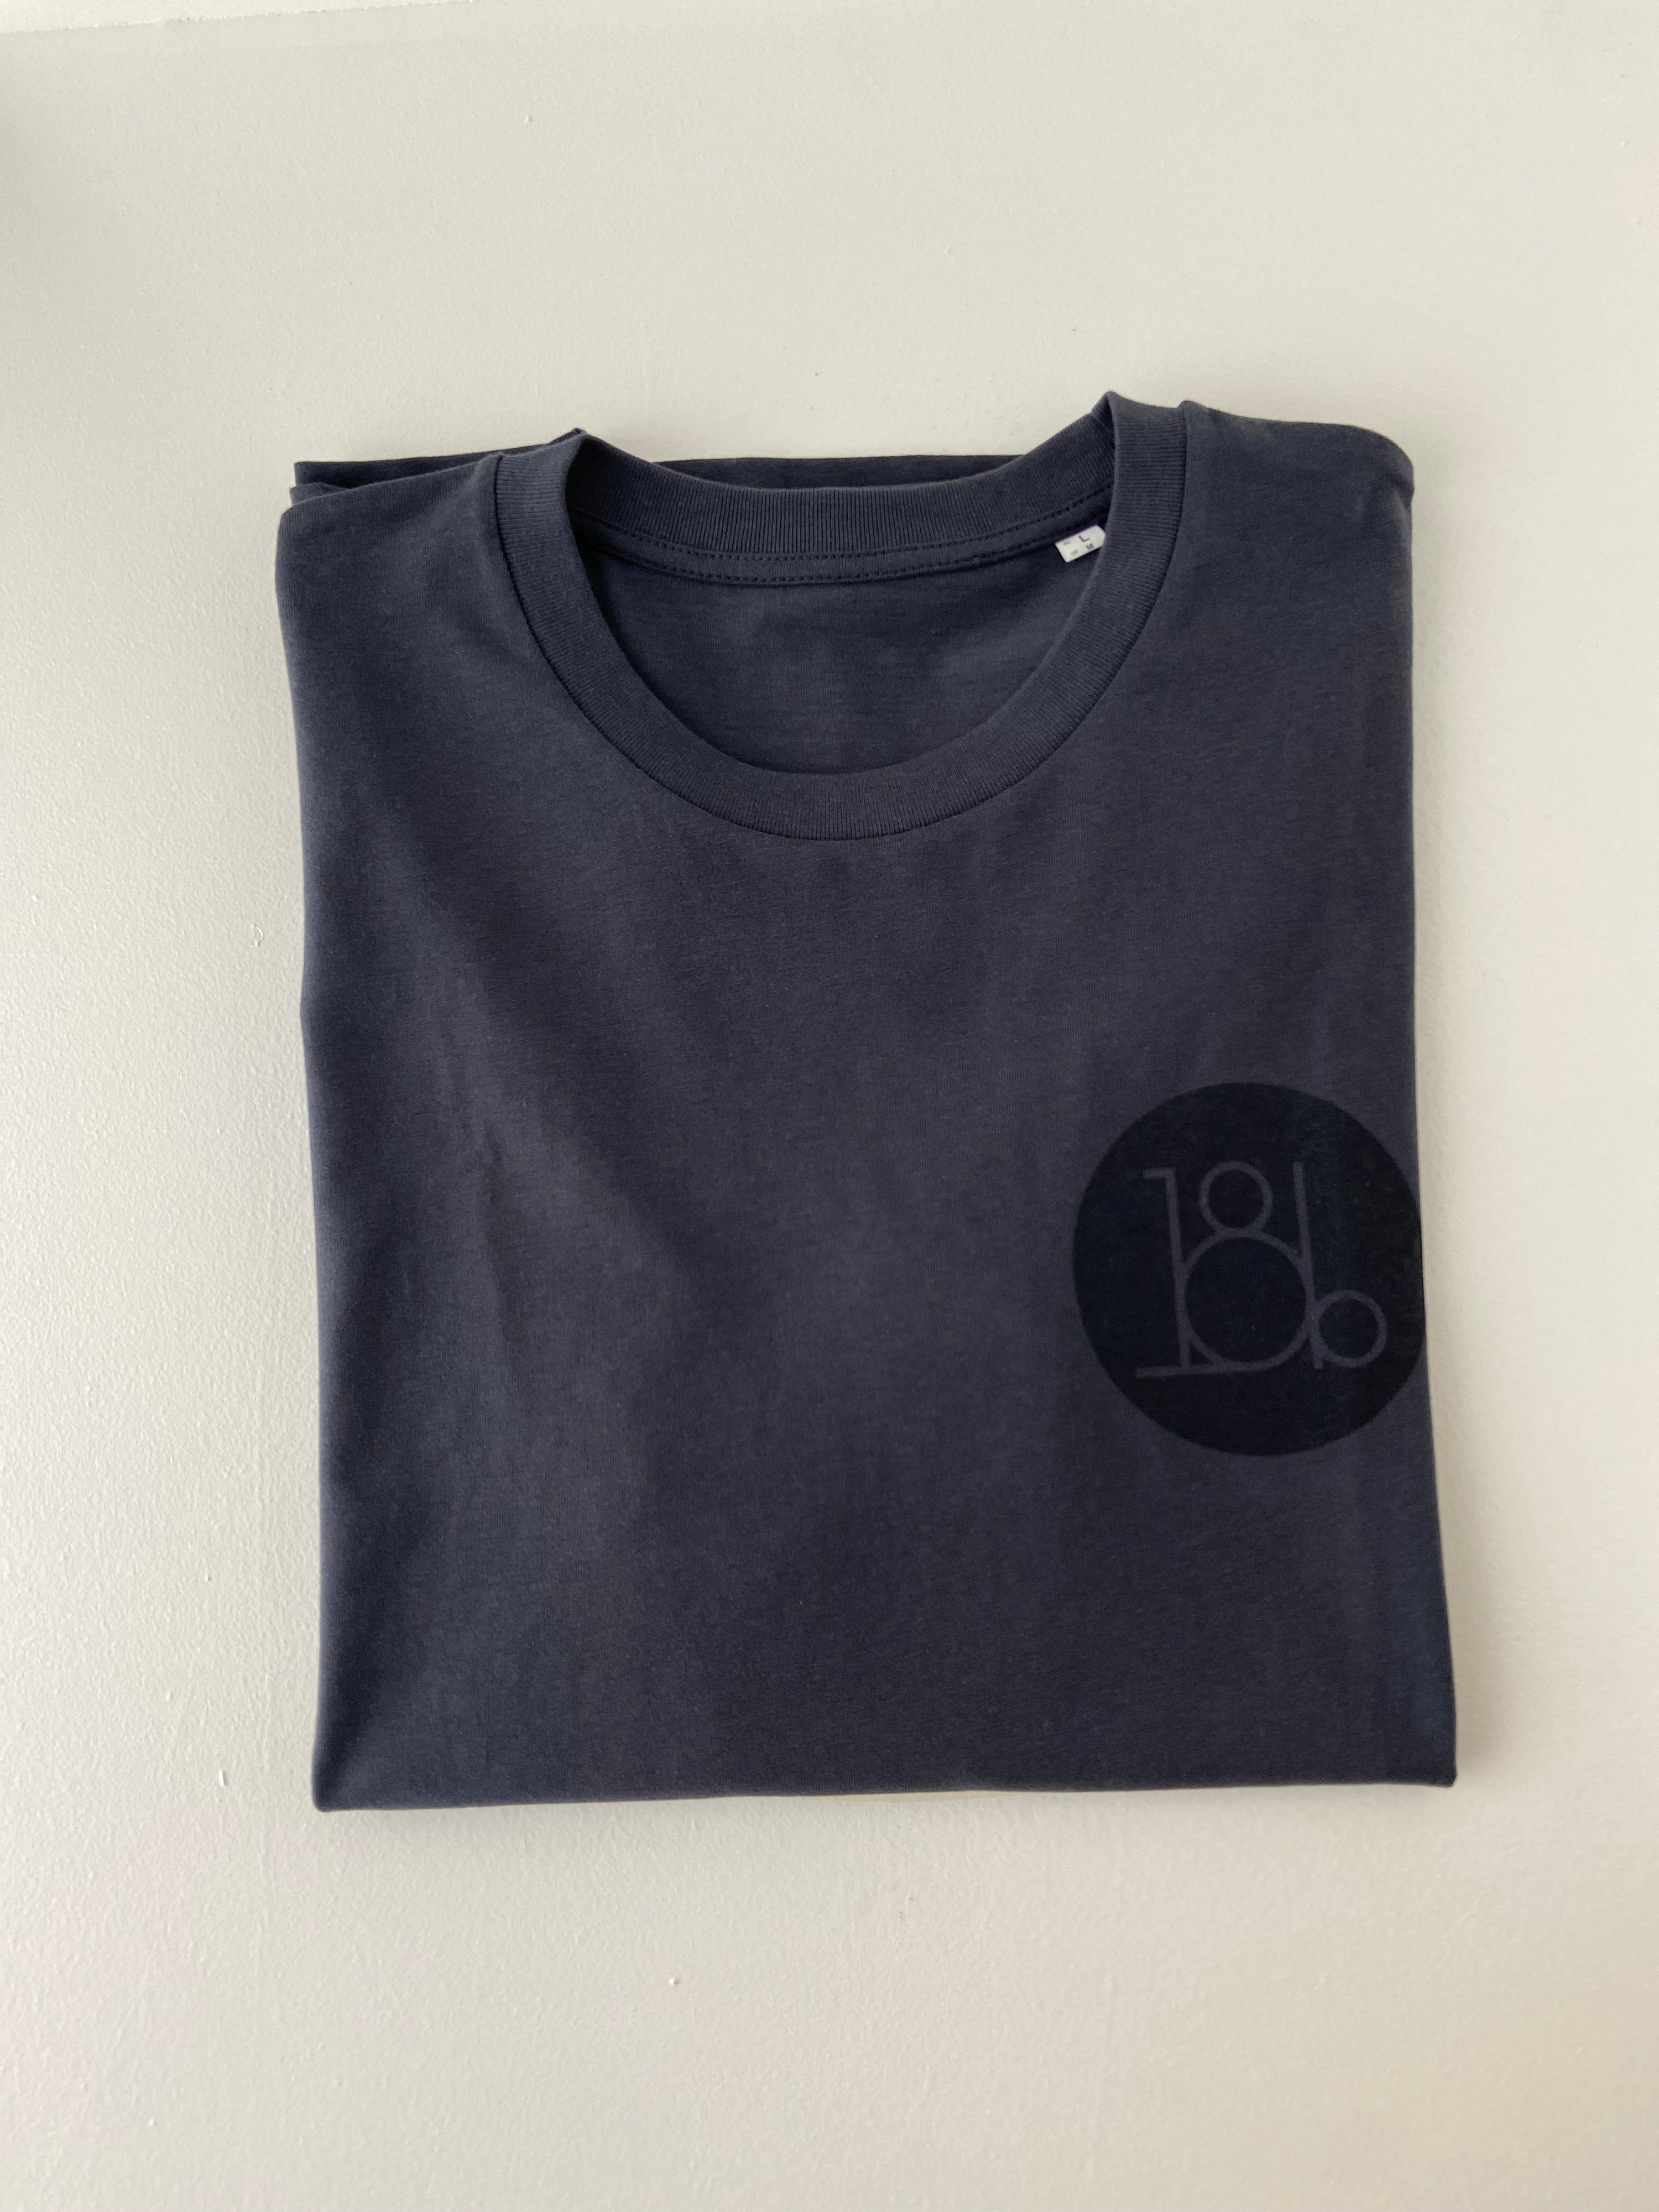 T-shirt grå/sort med lille logo